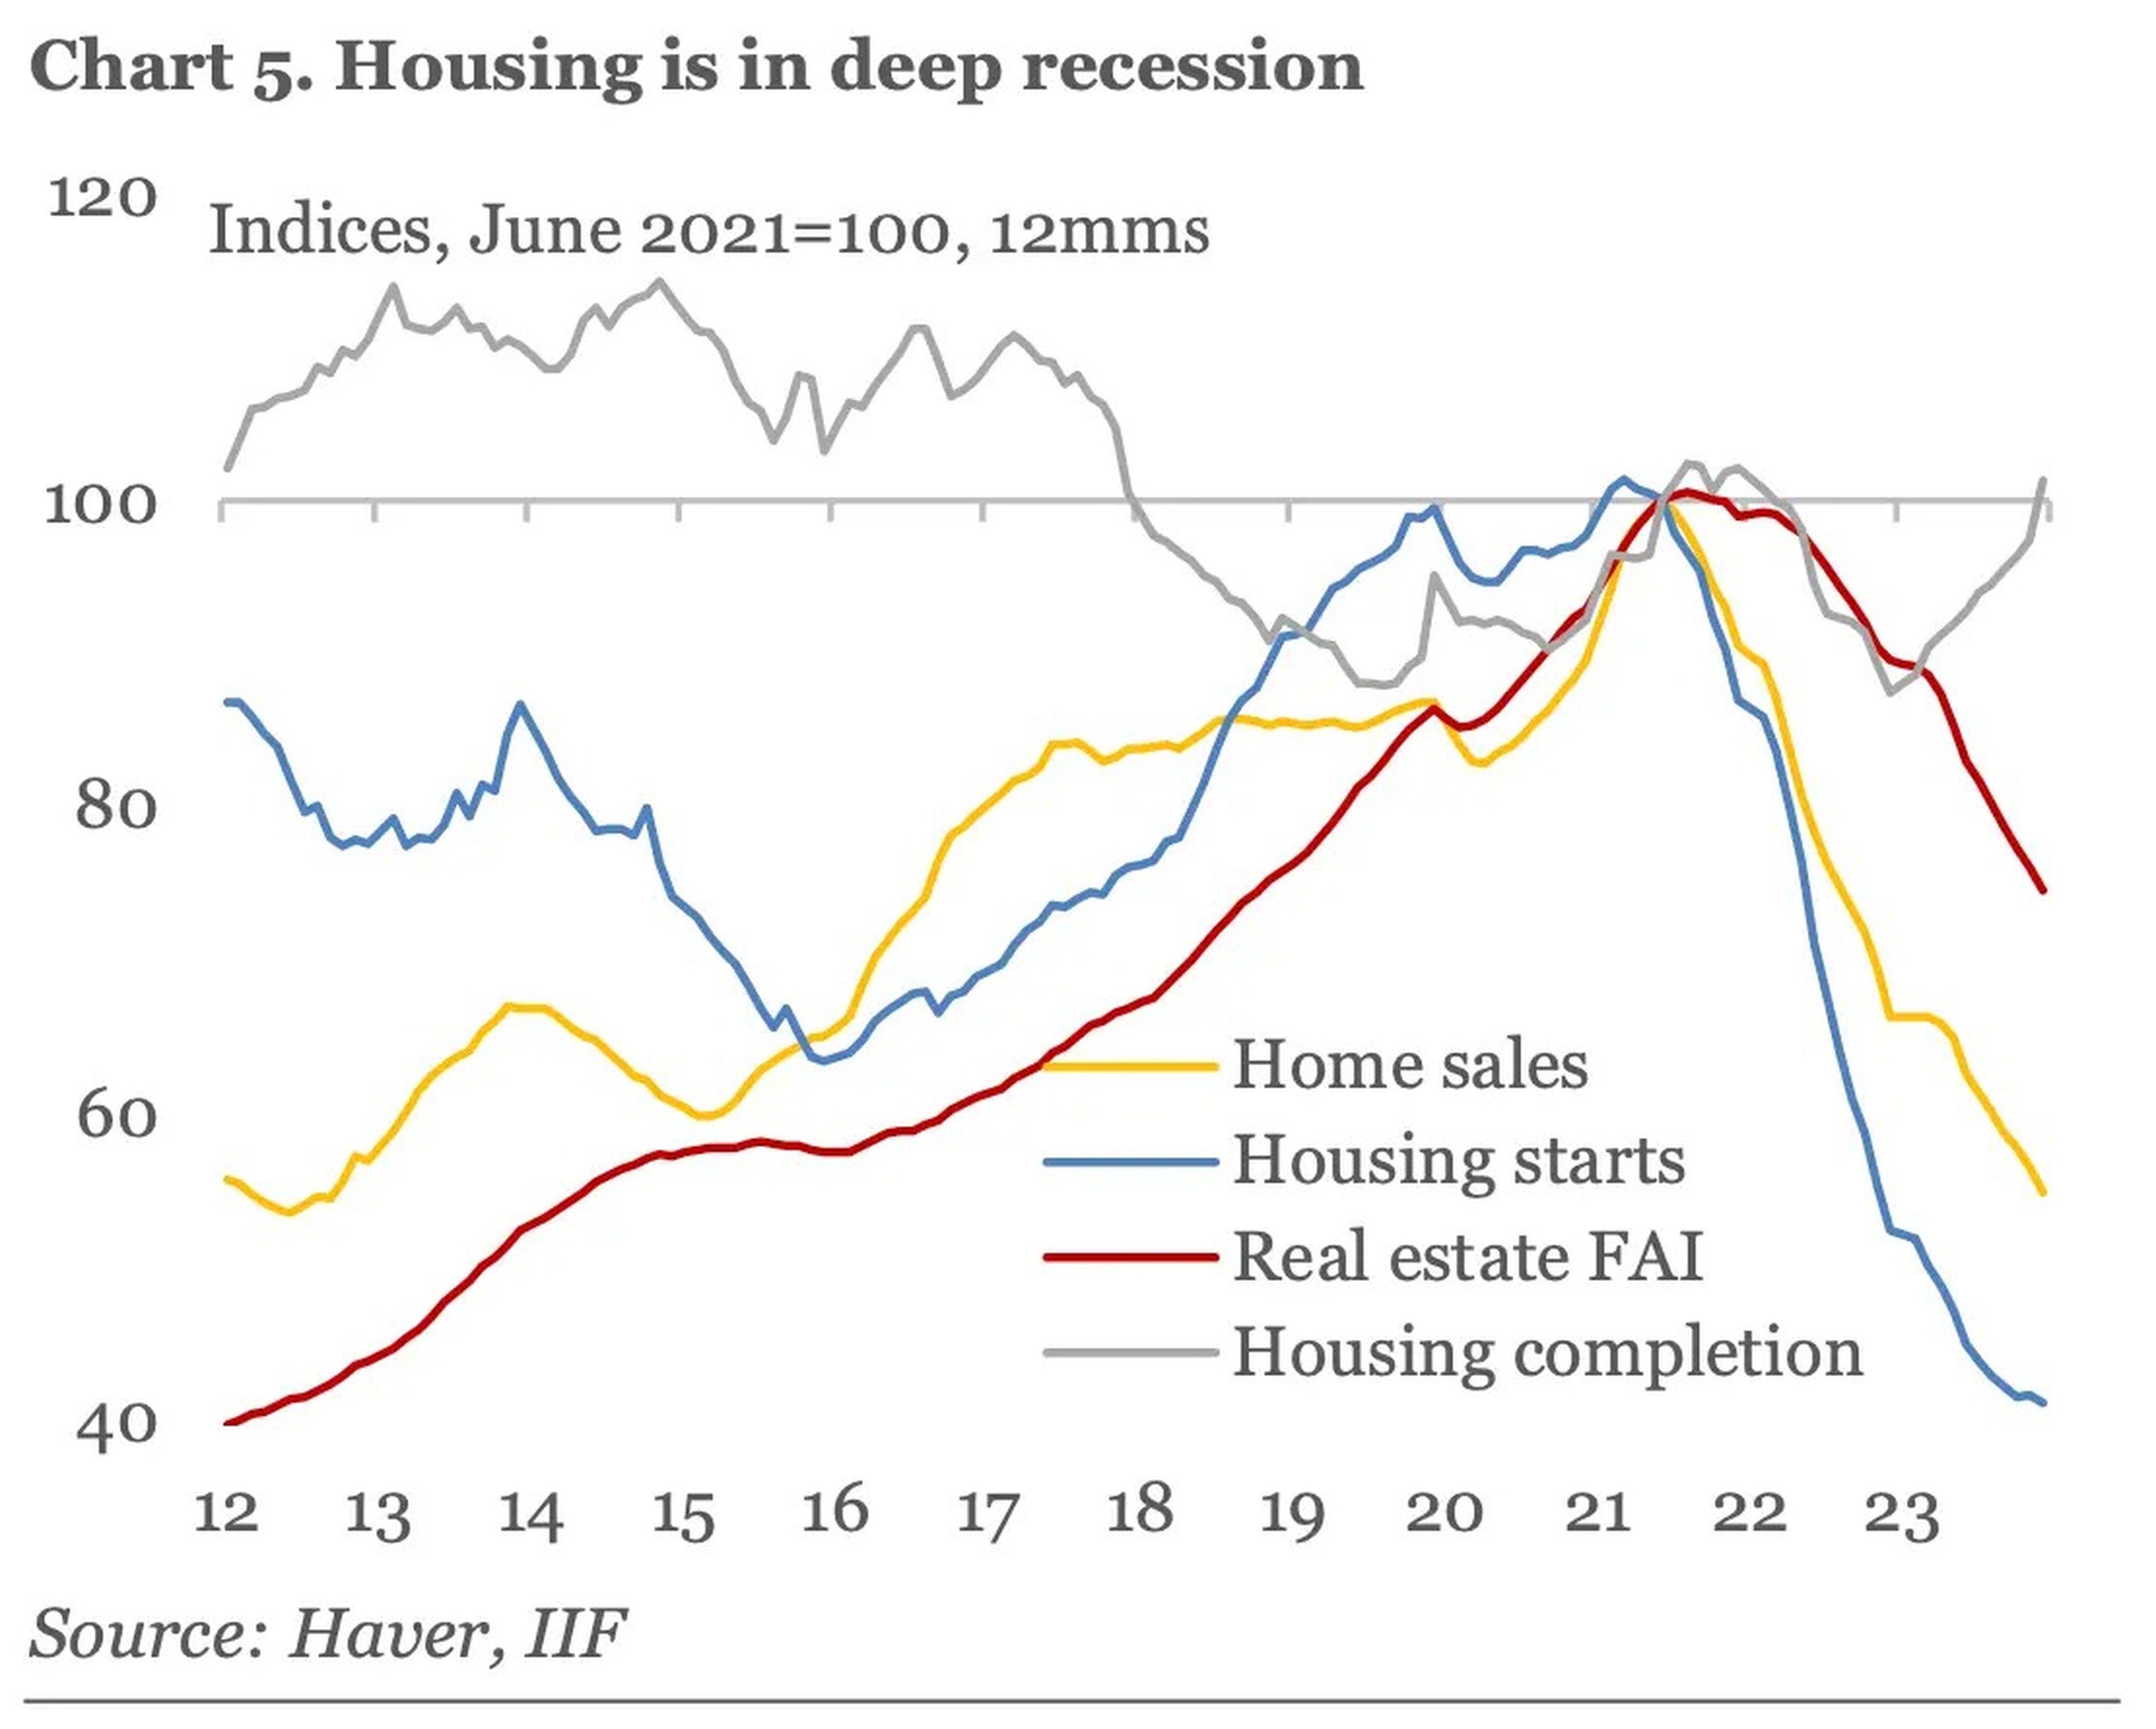 La vivienda está en profunda recesión.